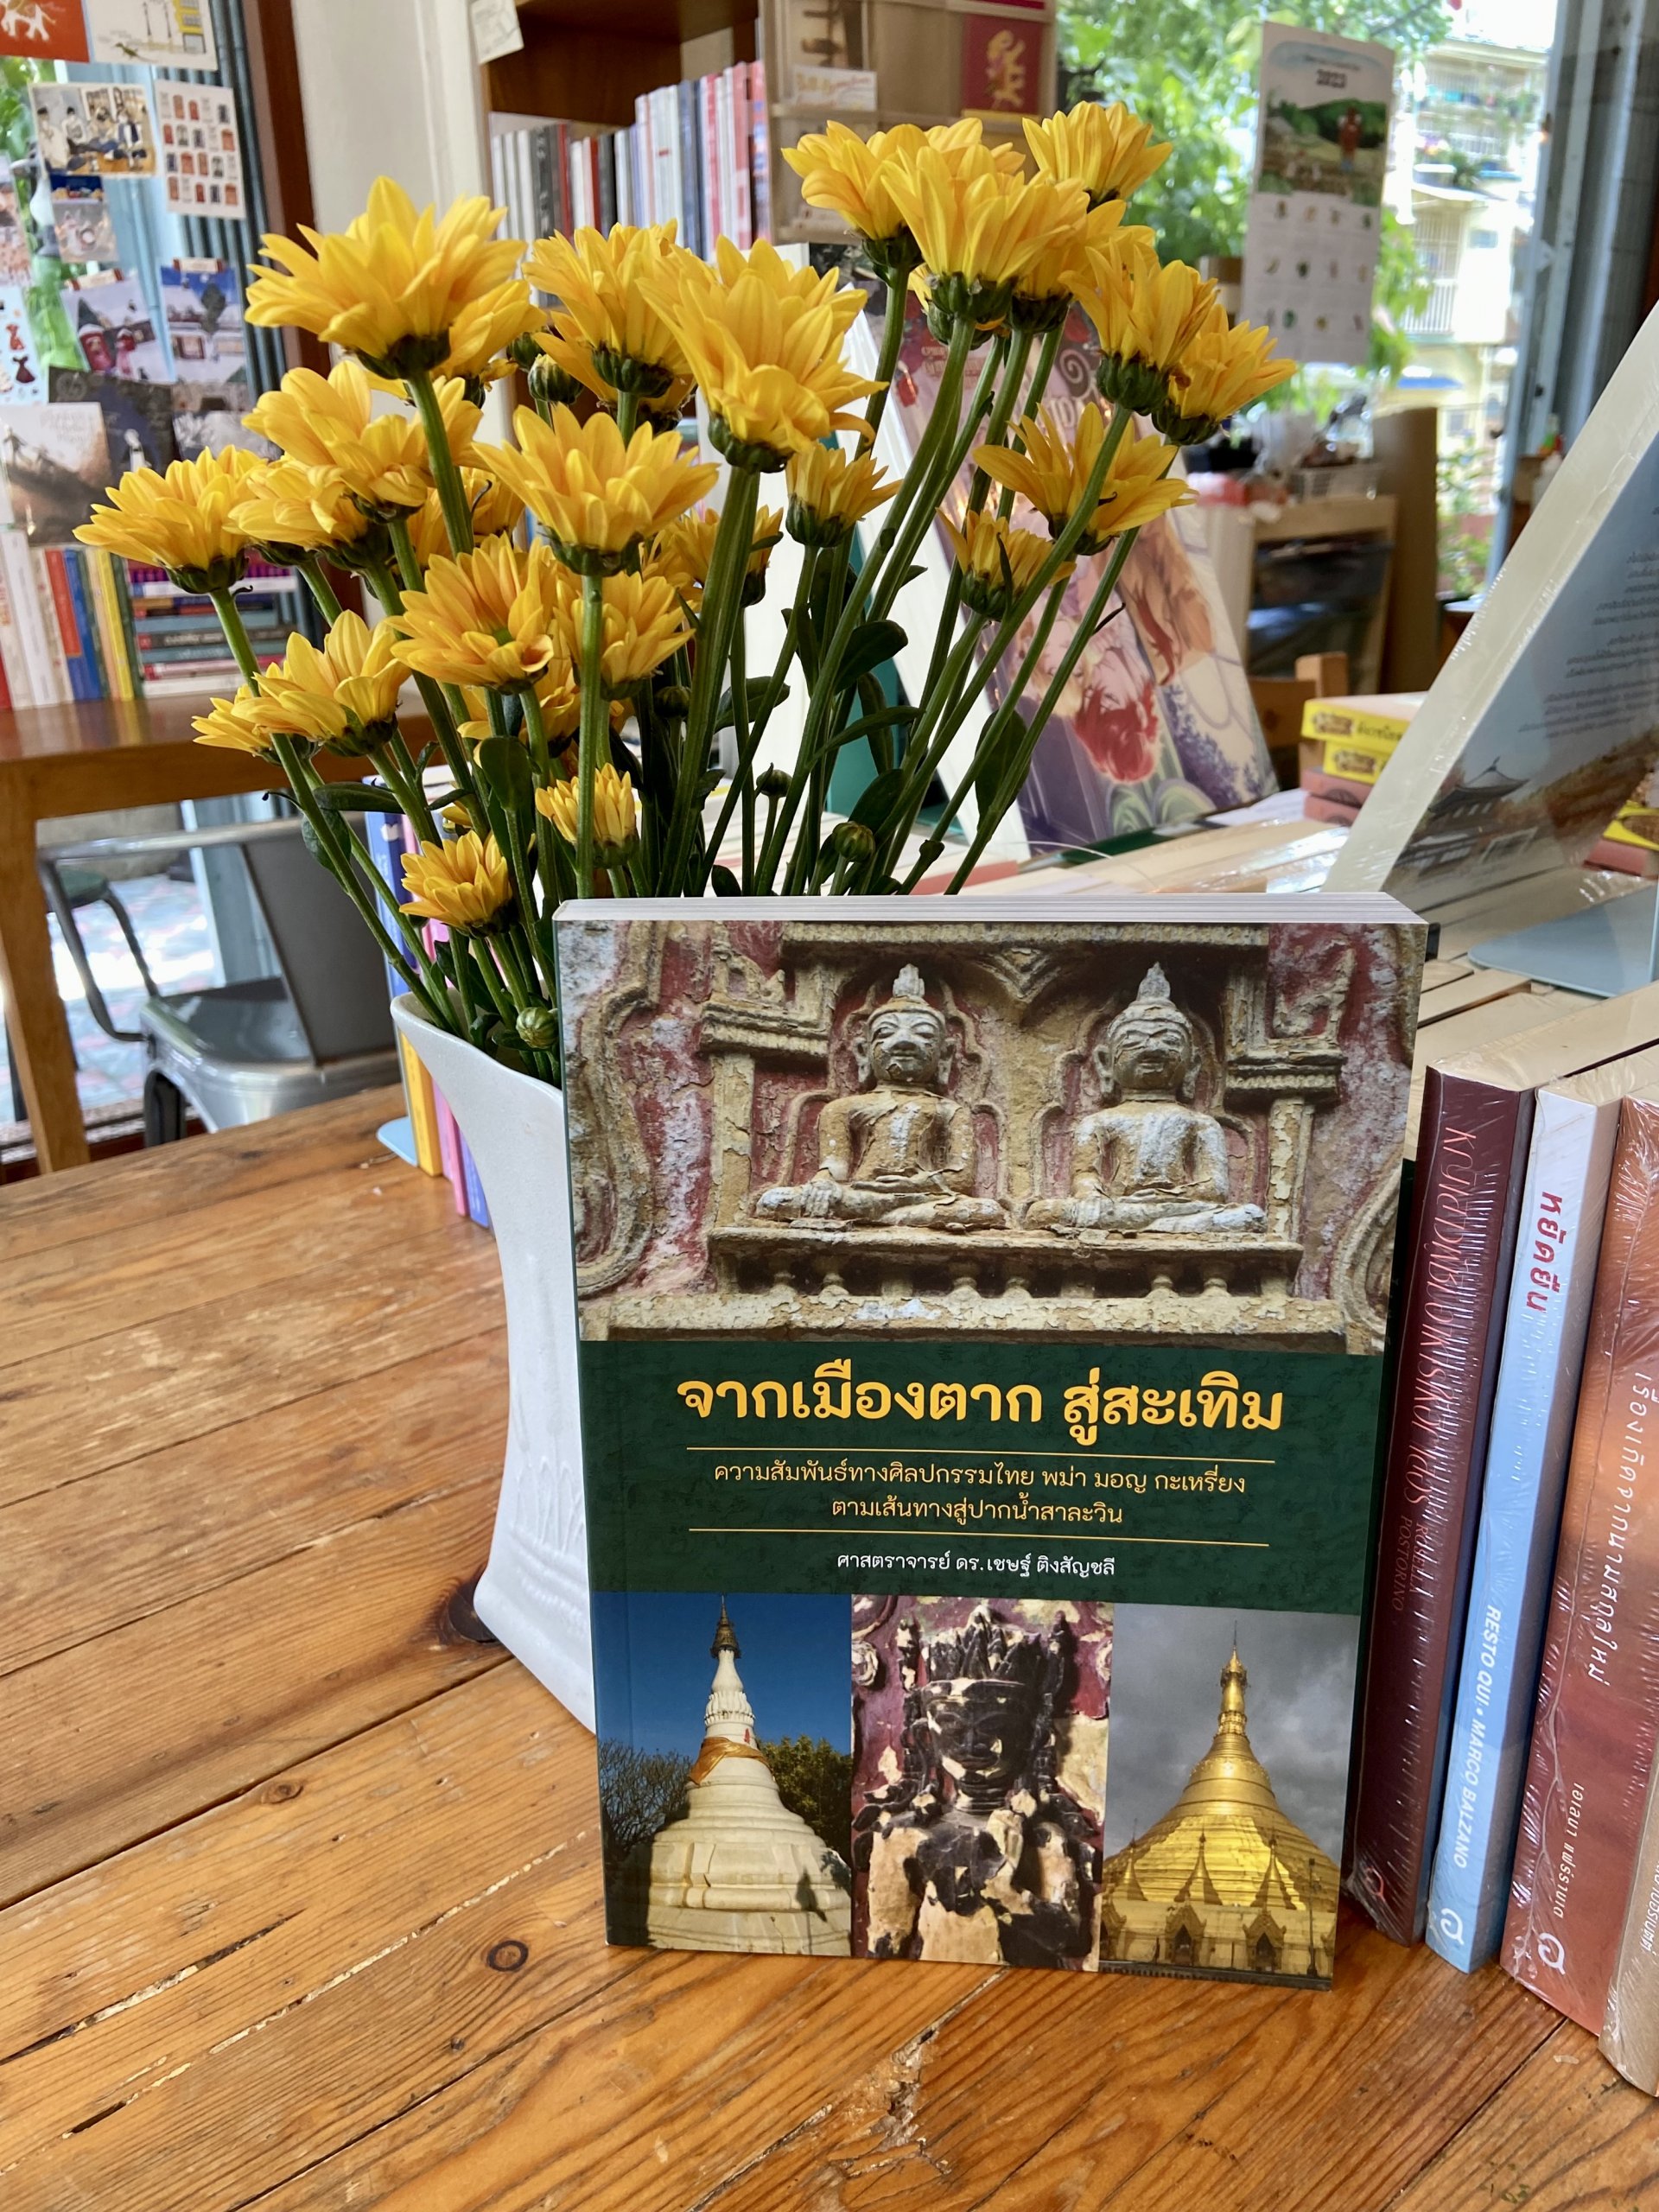 หนังสือ จากเมืองตาก สู่สะเทิม ความสัมพันธ์ทางศิลปกรรมไทย พม่า มอญ กะเหรี่ยง ตามเส้นทางสู่ปากน้ำสาละวิน